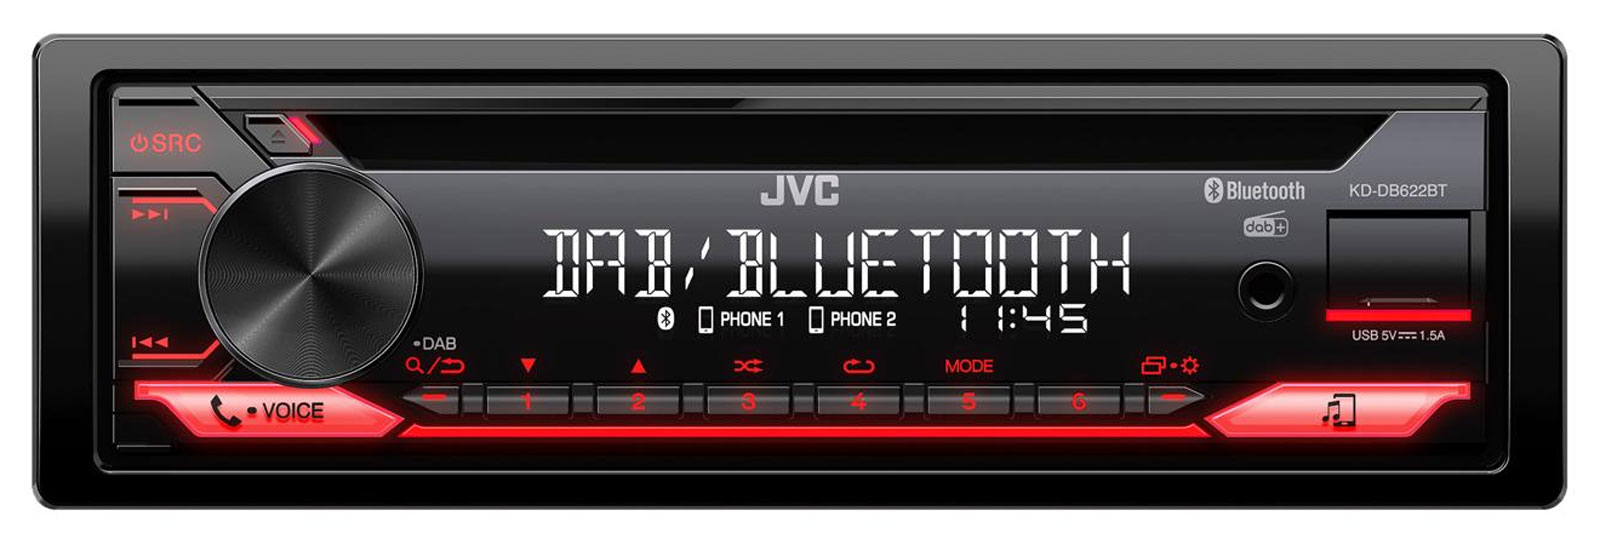 Autoradio JVC KD-DB622BT - Norauto